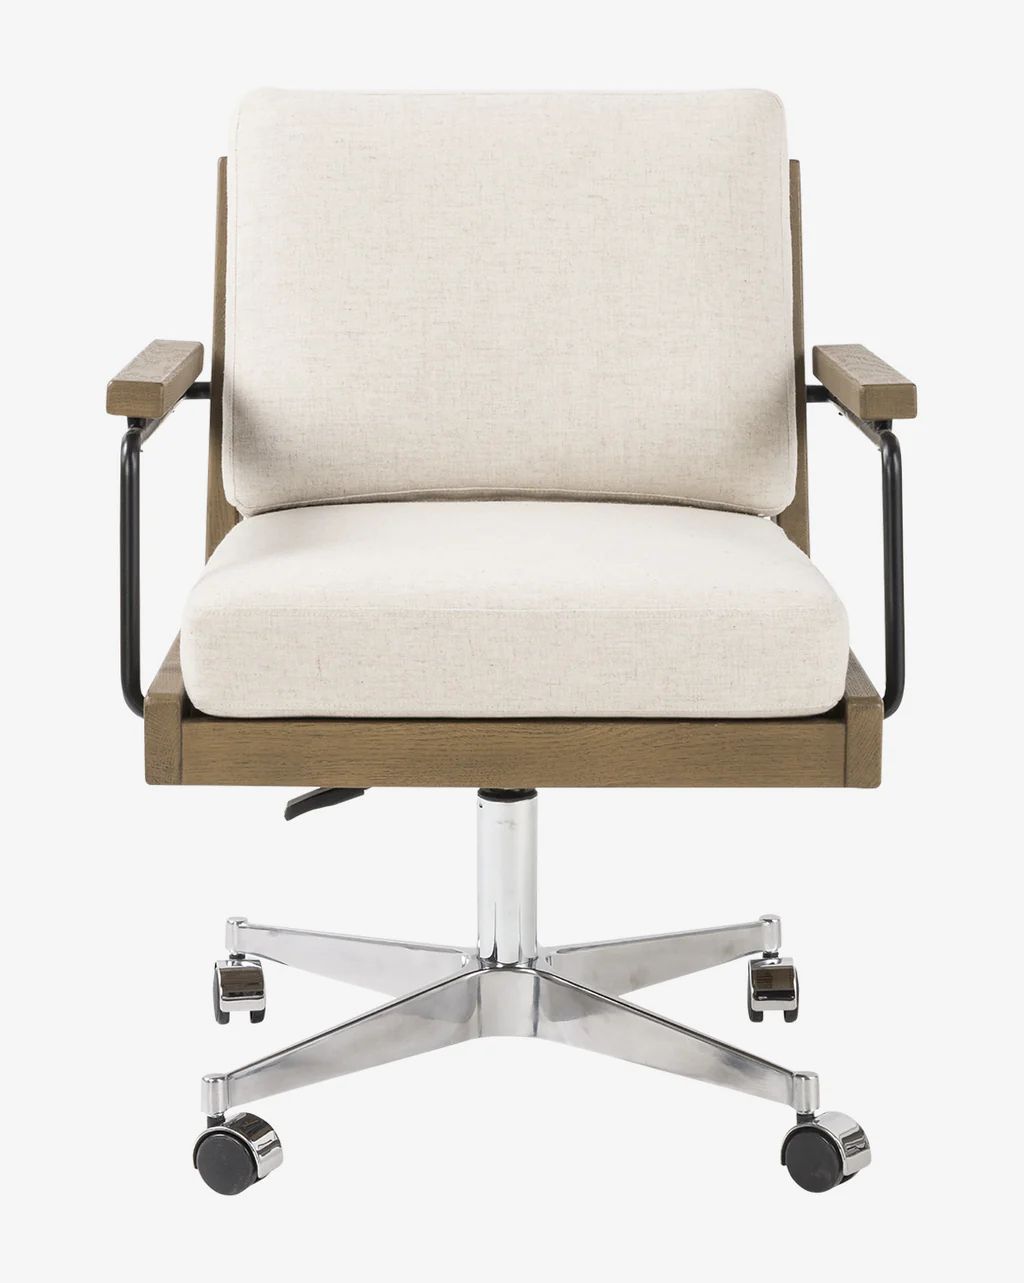 Kessler Desk Chair | McGee & Co.